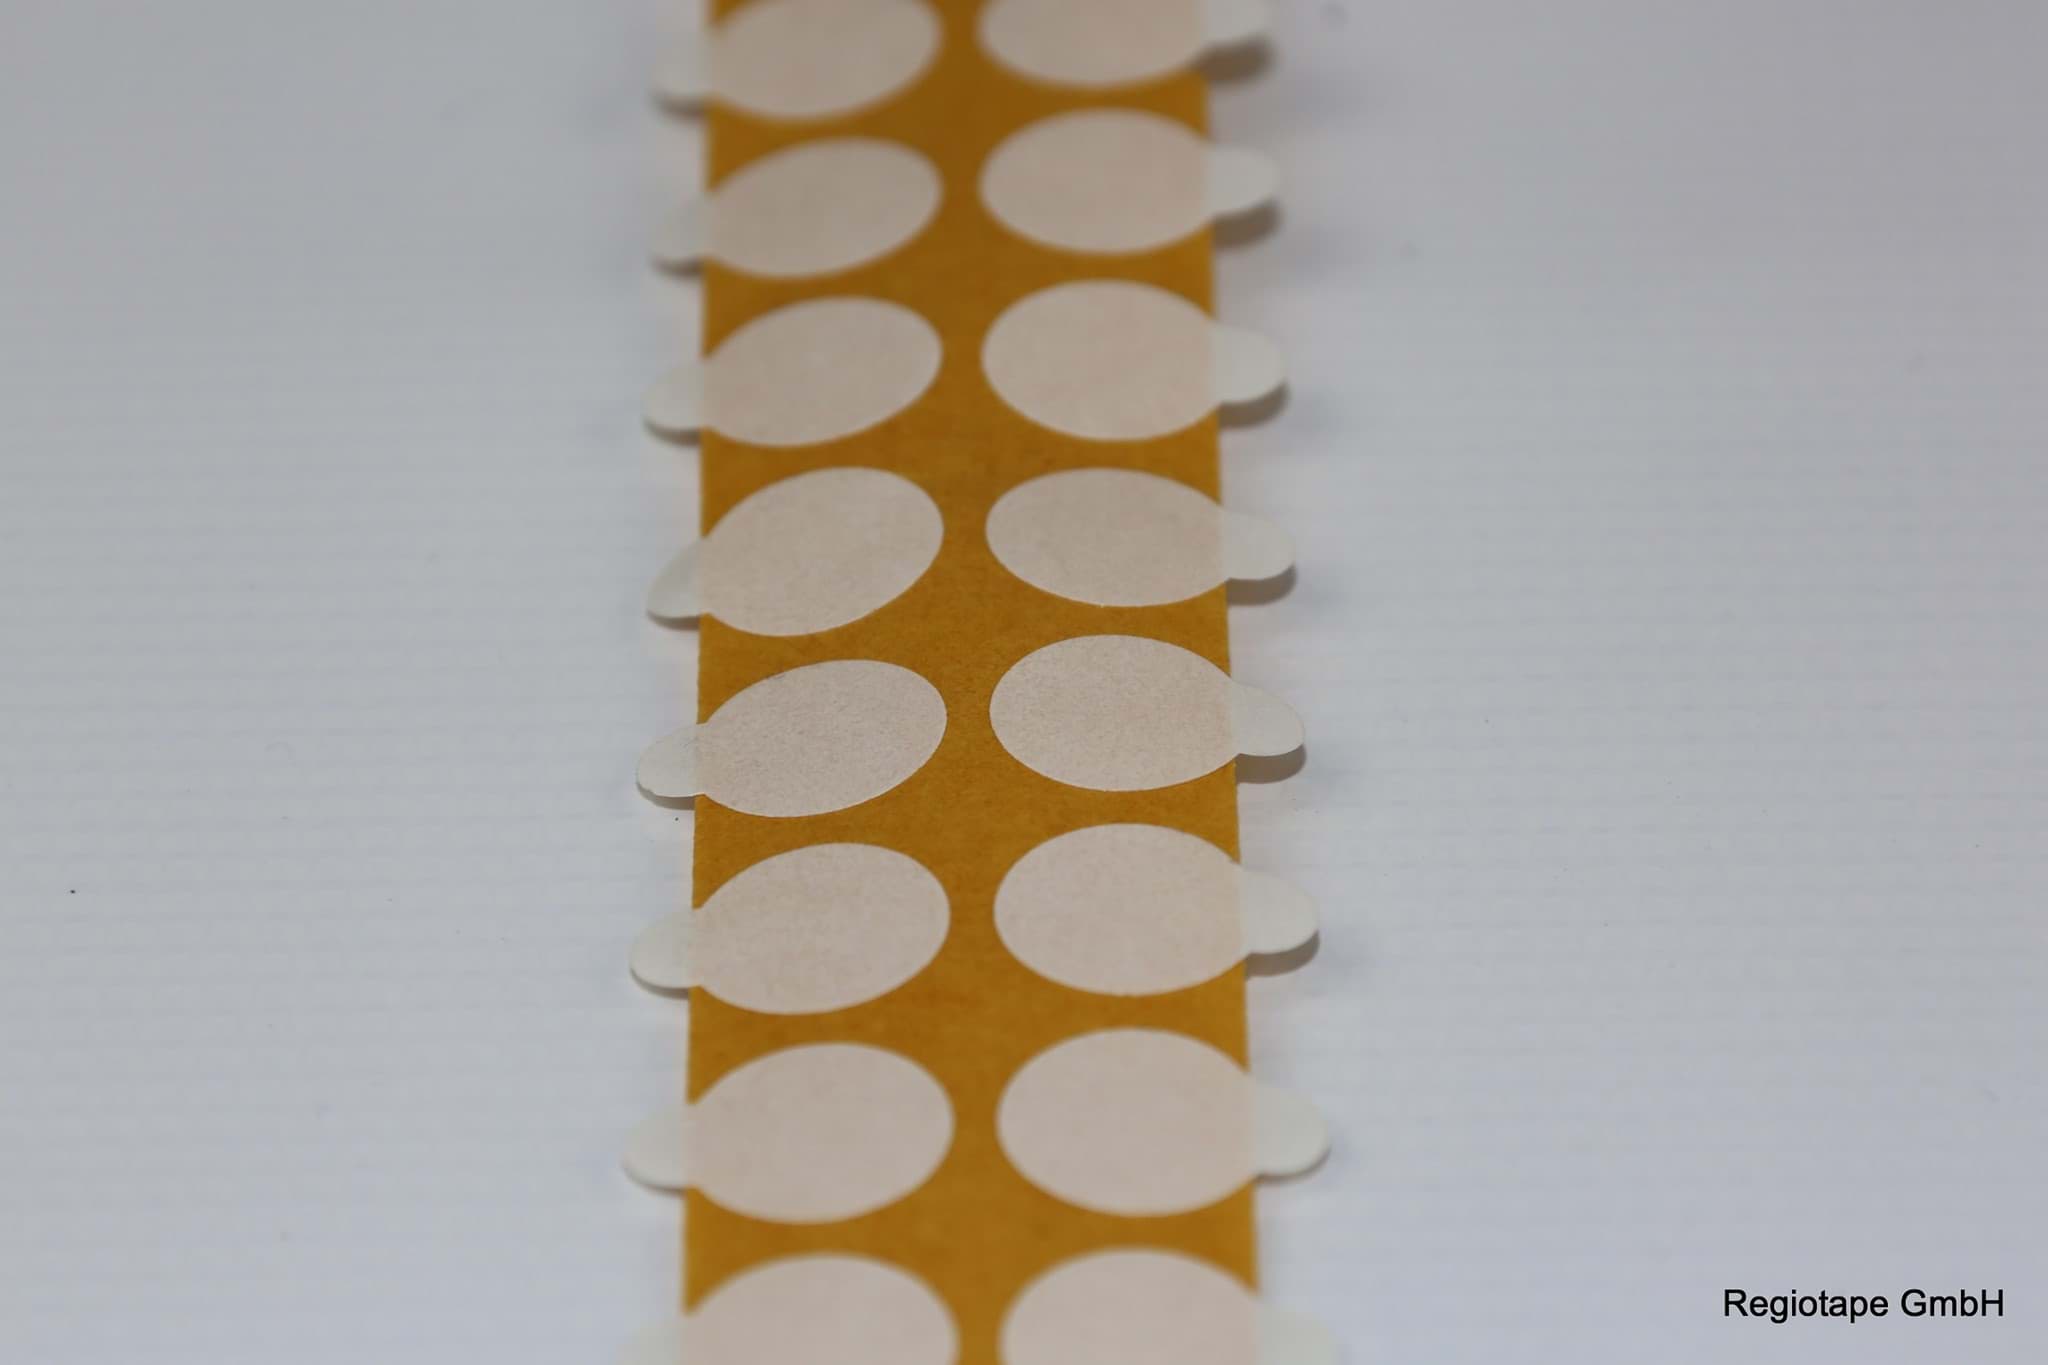 Bild von F334770L50 doppelseitige Klebepunkte, stark/stark, 50 mm rund, 5.000 Stück pro Rolle, Folienträger, Acrylat, 0,21 mm Dicke